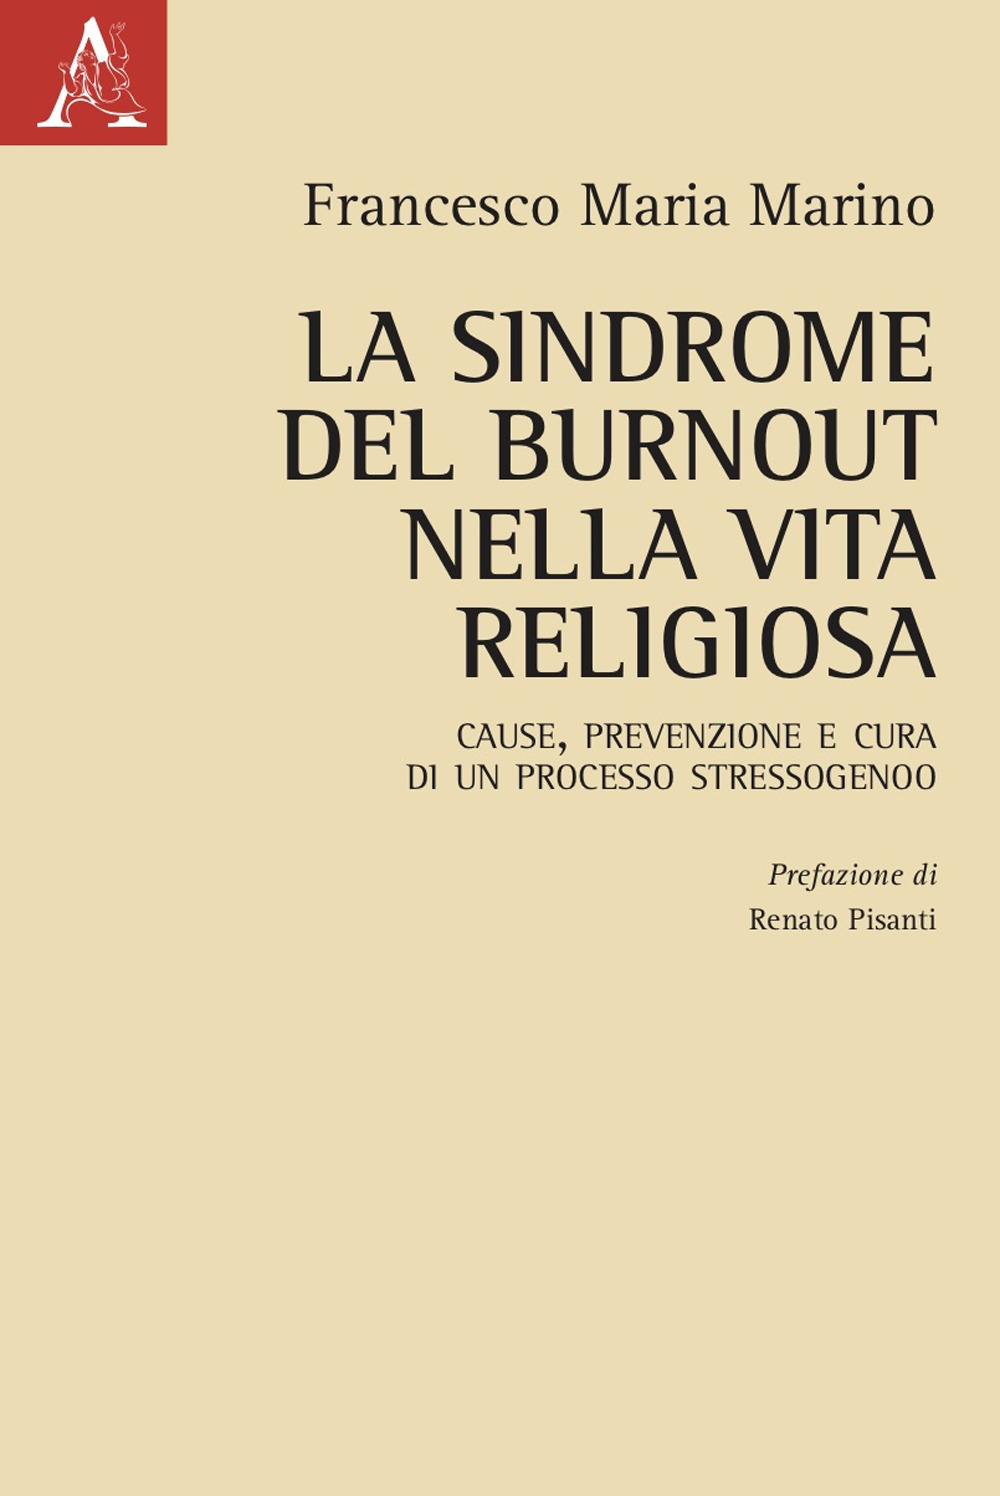 La sindrome del burnout nella vita religiosa. Cause, prevenzione e cura di un processo stressogeno